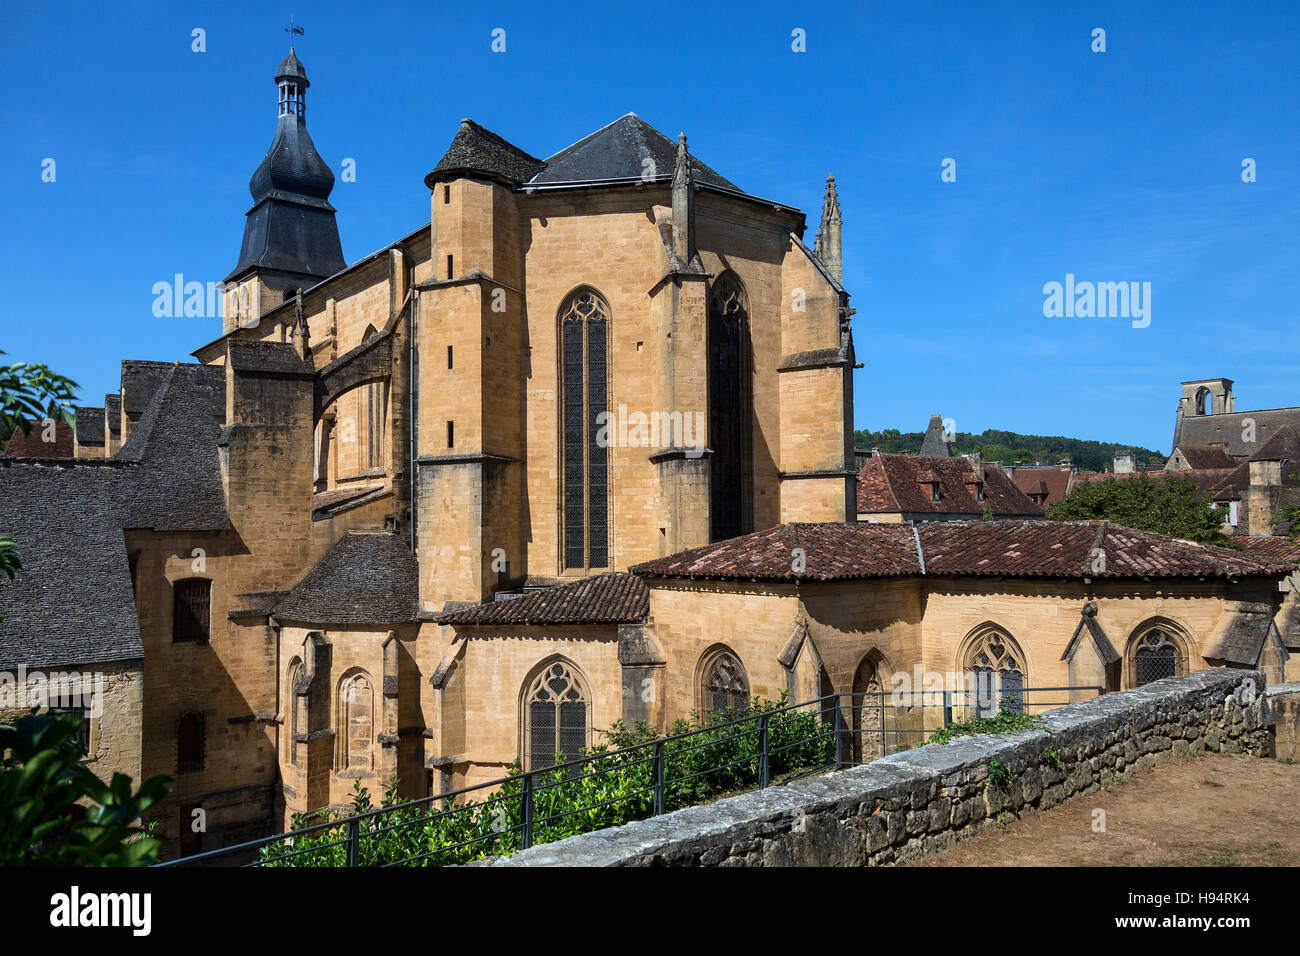 L'Abbaye de Saint-Sauveur de sarlat Sarlat (cathédrale) dans la ville de Sarlat-La-caneda dans le Périgord en Dordogne en France. Banque D'Images